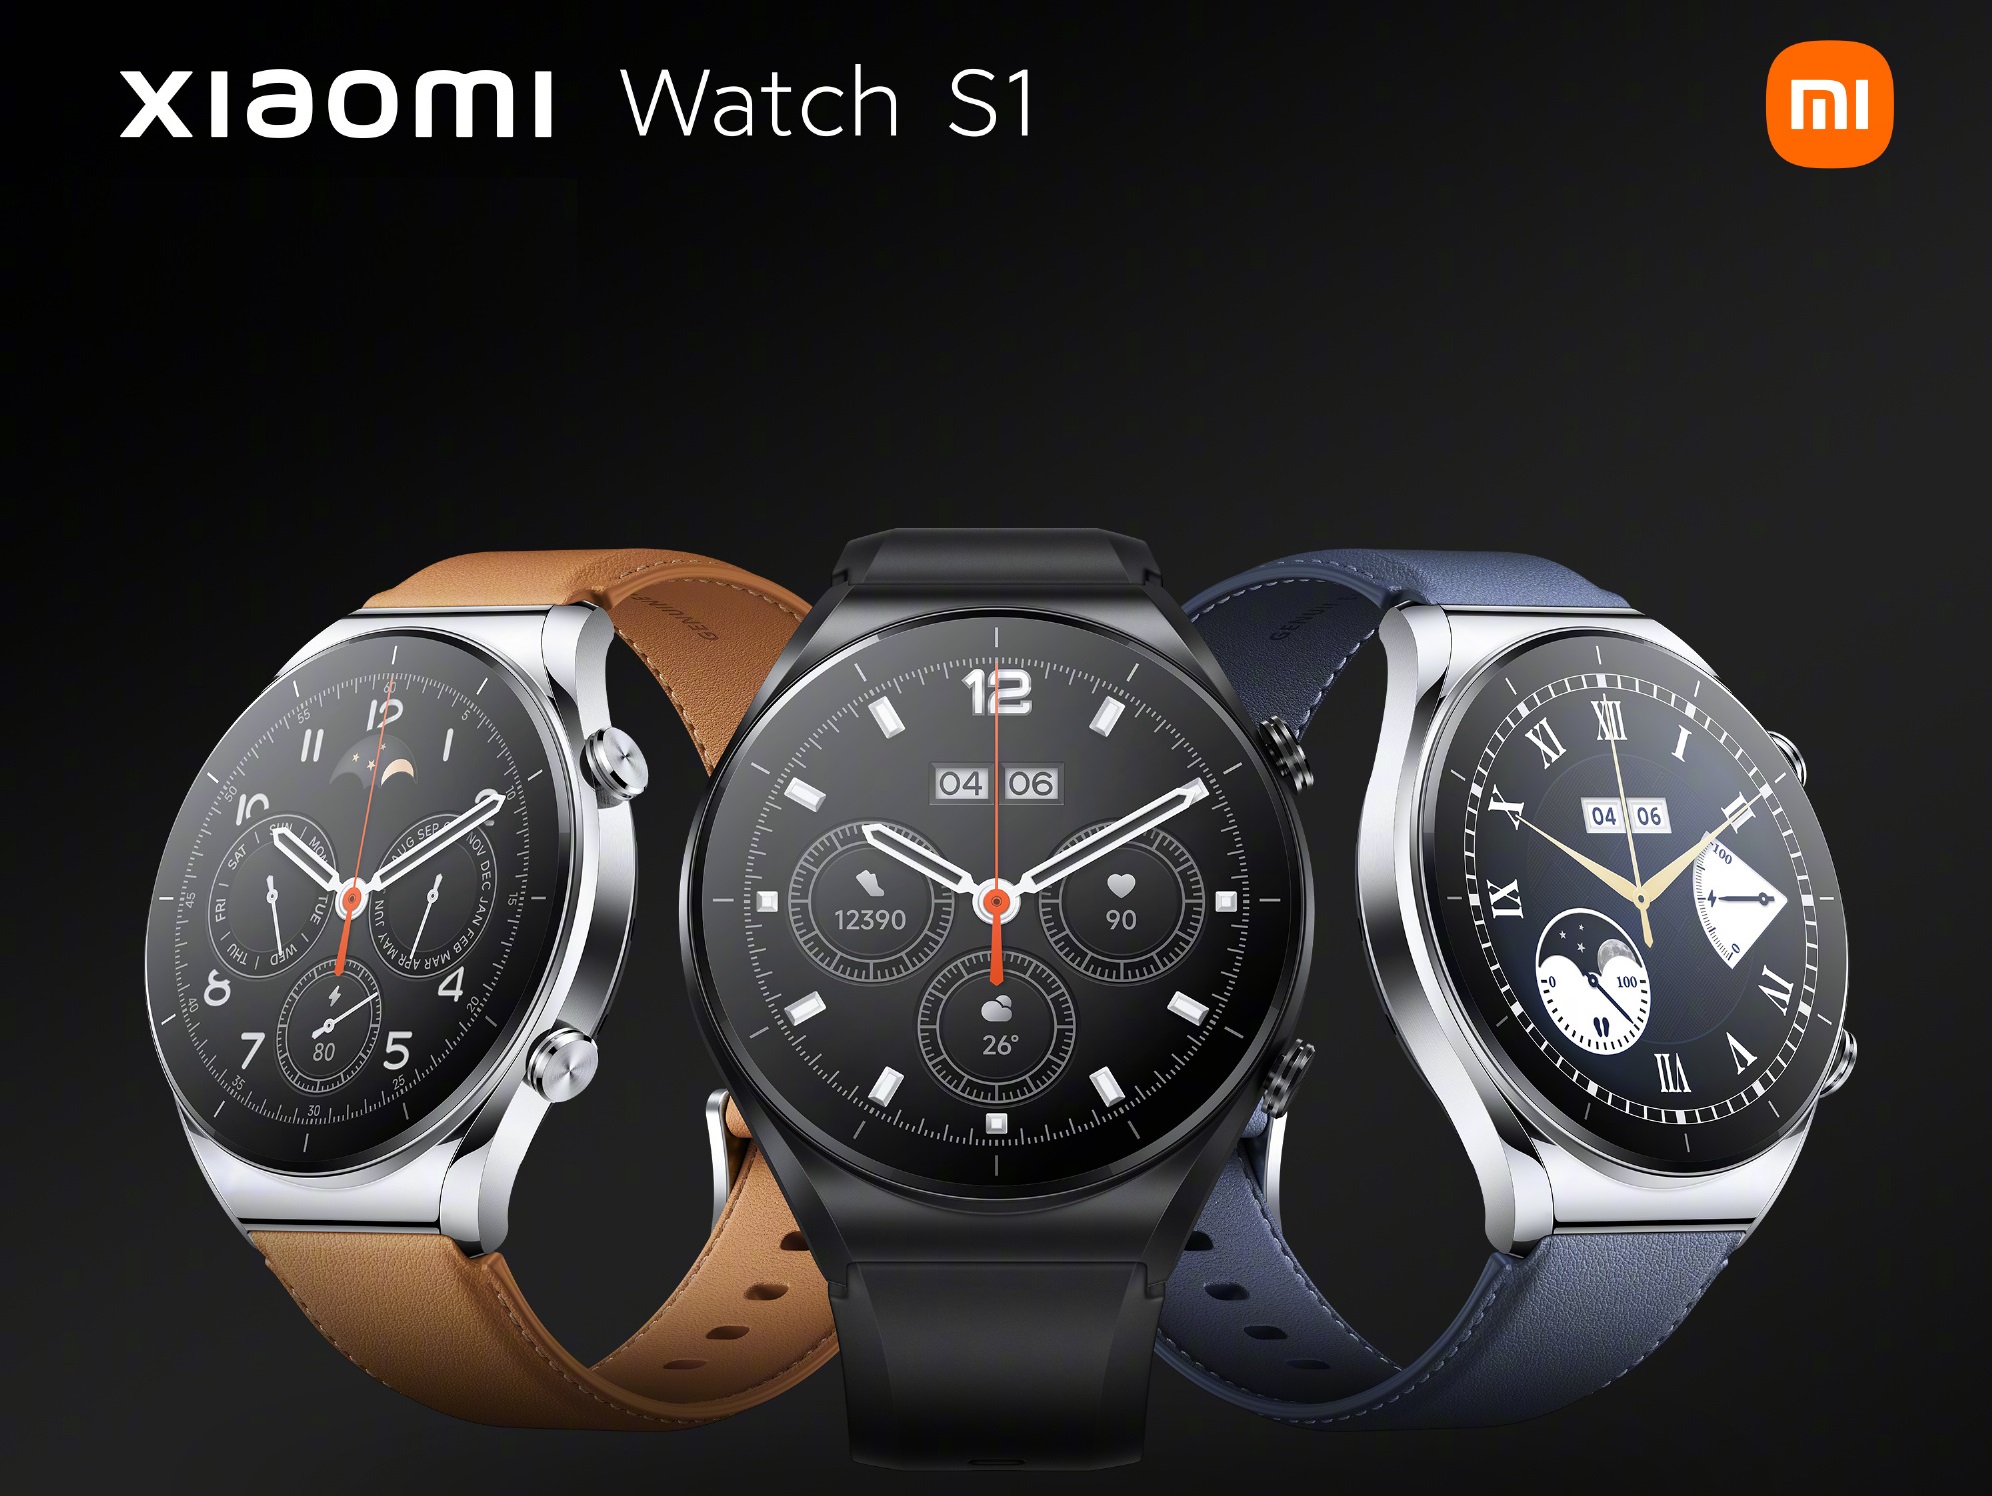 Gli smartwatch Xiaomi Watch S1 e Watch S1 Active saranno in vendita in Europa – prezzi e specifiche sono già noti